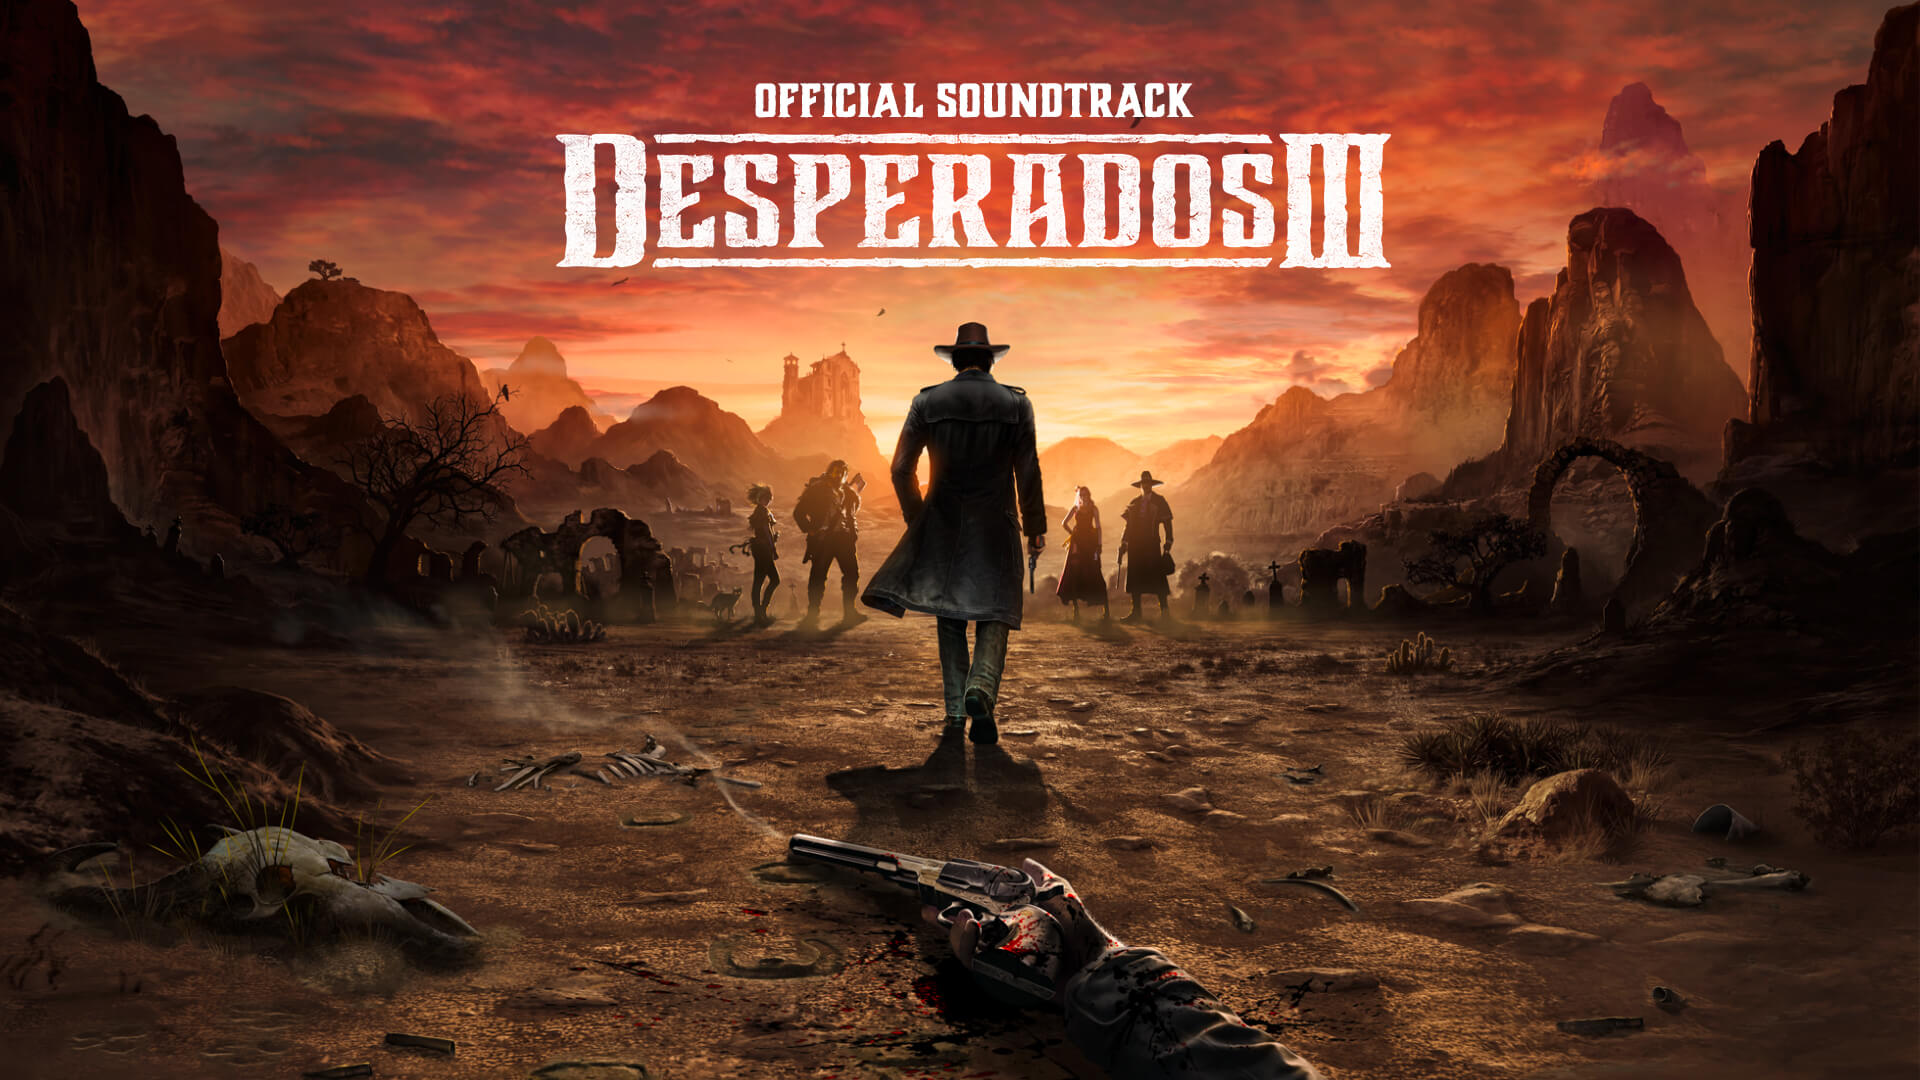 Desperados III - Soundtrack DLC Steam CD Key [USD 4.51]